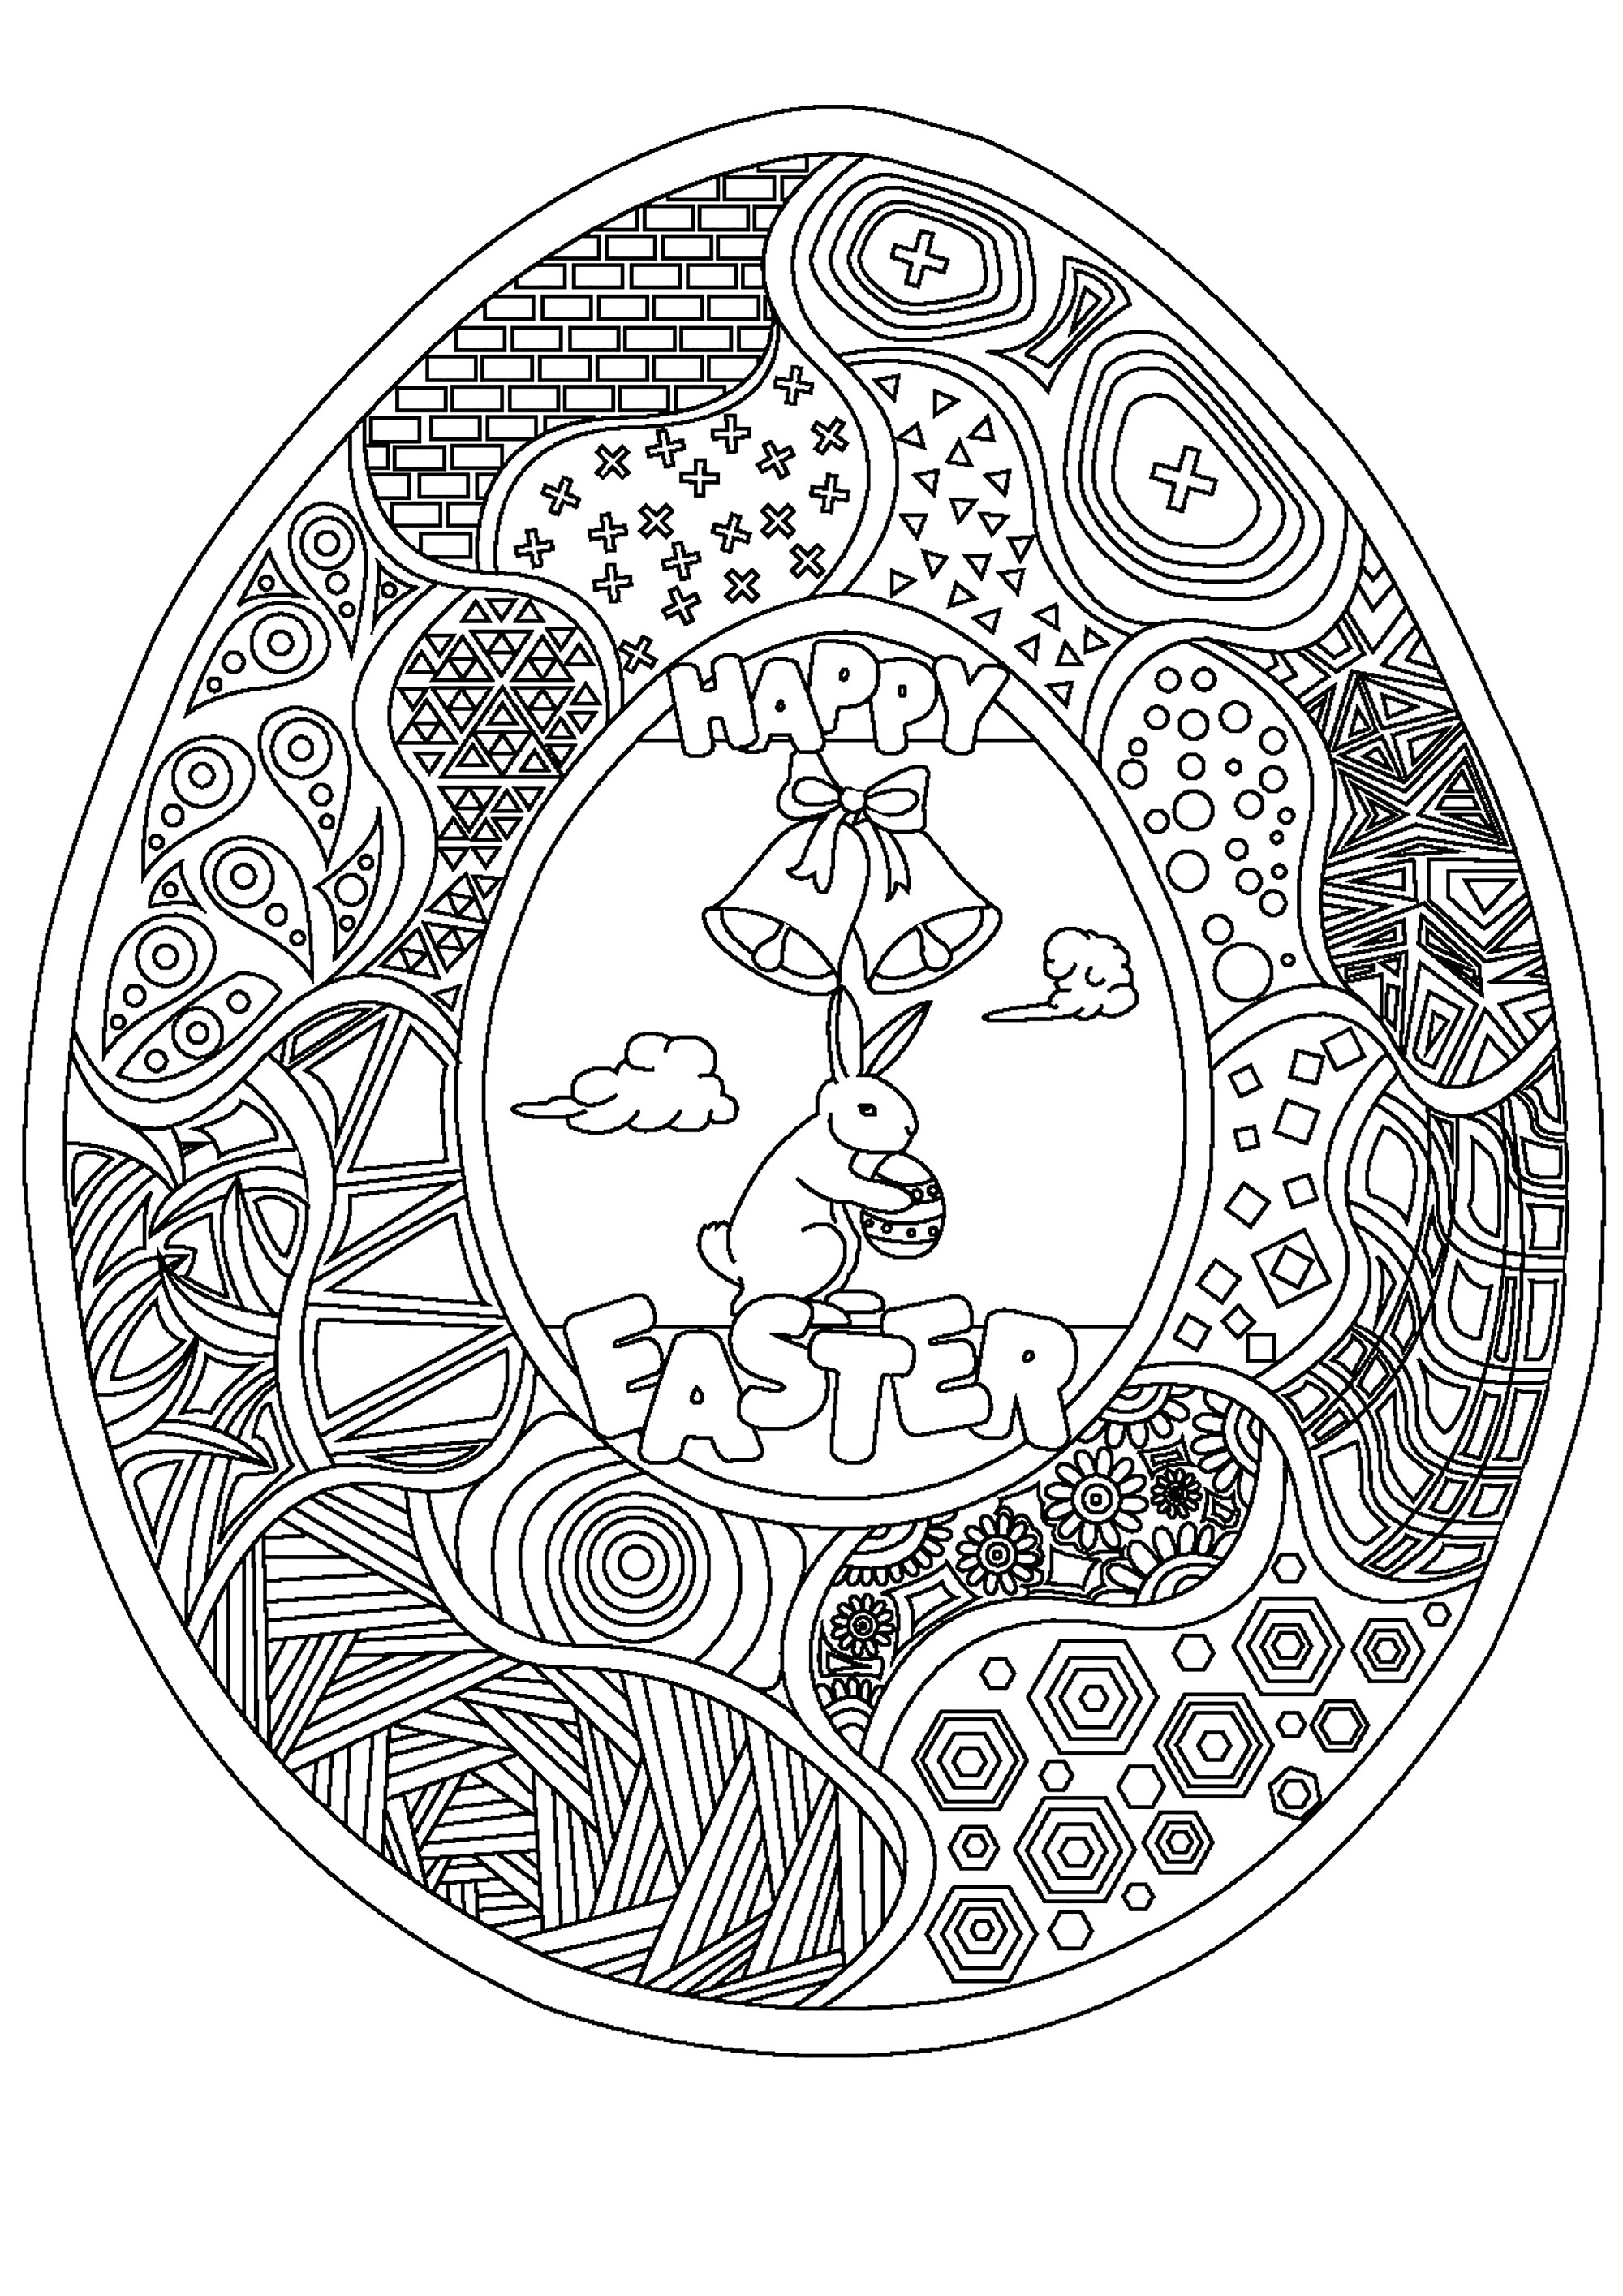 Ovo de Páscoa para colorir com muitos padrões, um coelhinho giro e dois sinos, Artista : Damien